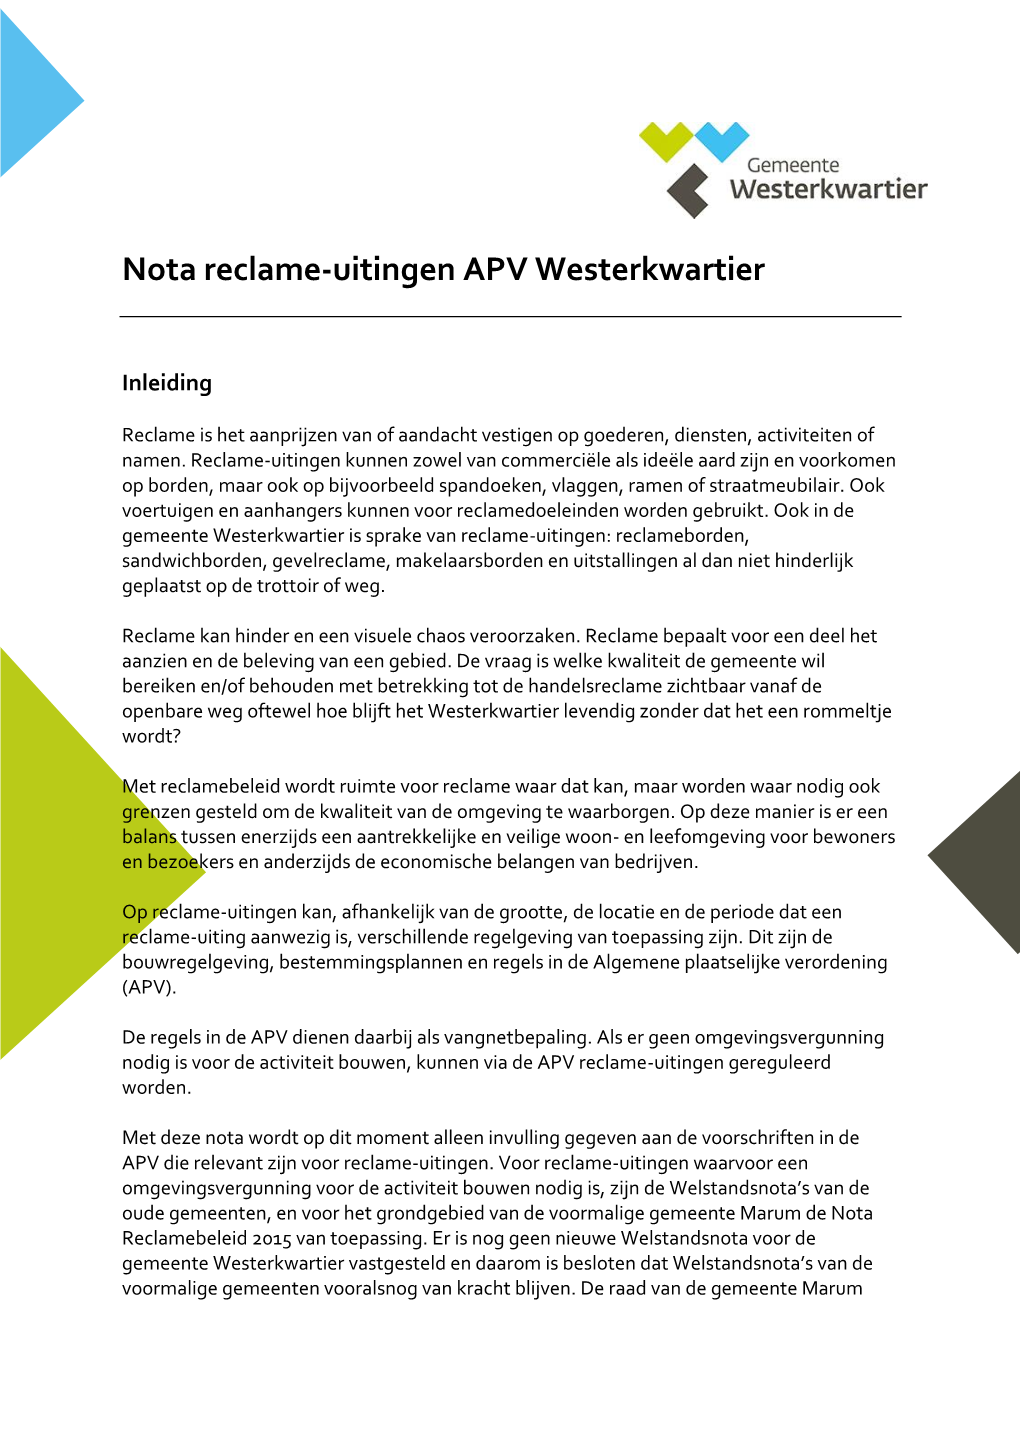 Nota Reclame-Uitingen APV Westerkwartier